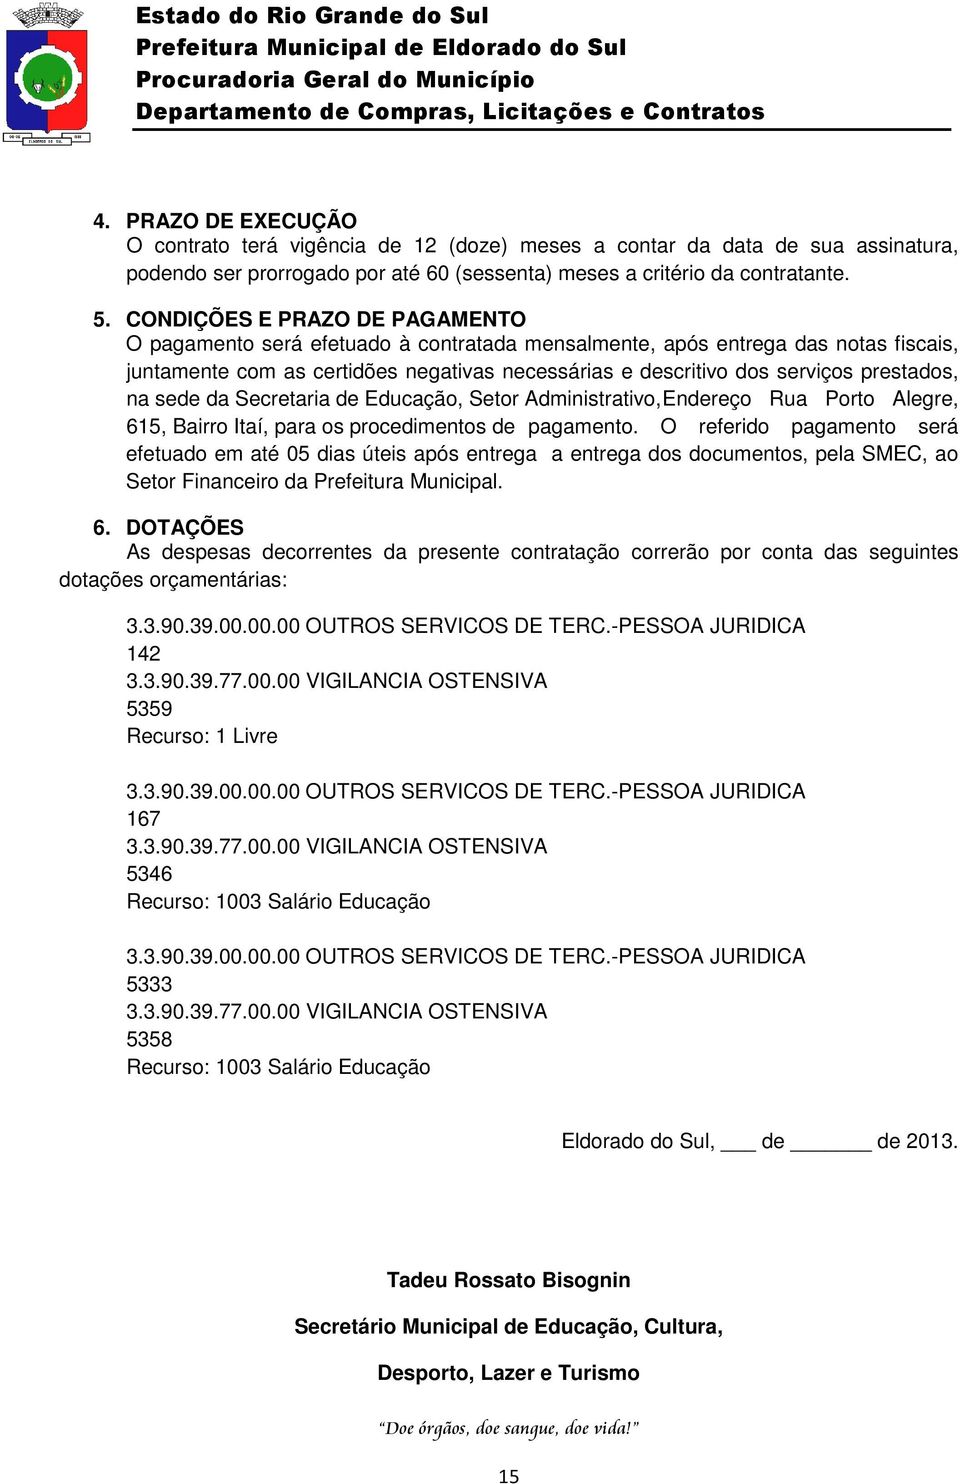 prestados, na sede da Secretaria de Educação, Setor Administrativo, Endereço Rua Porto Alegre, 615, Bairro Itaí, para os procedimentos de pagamento.